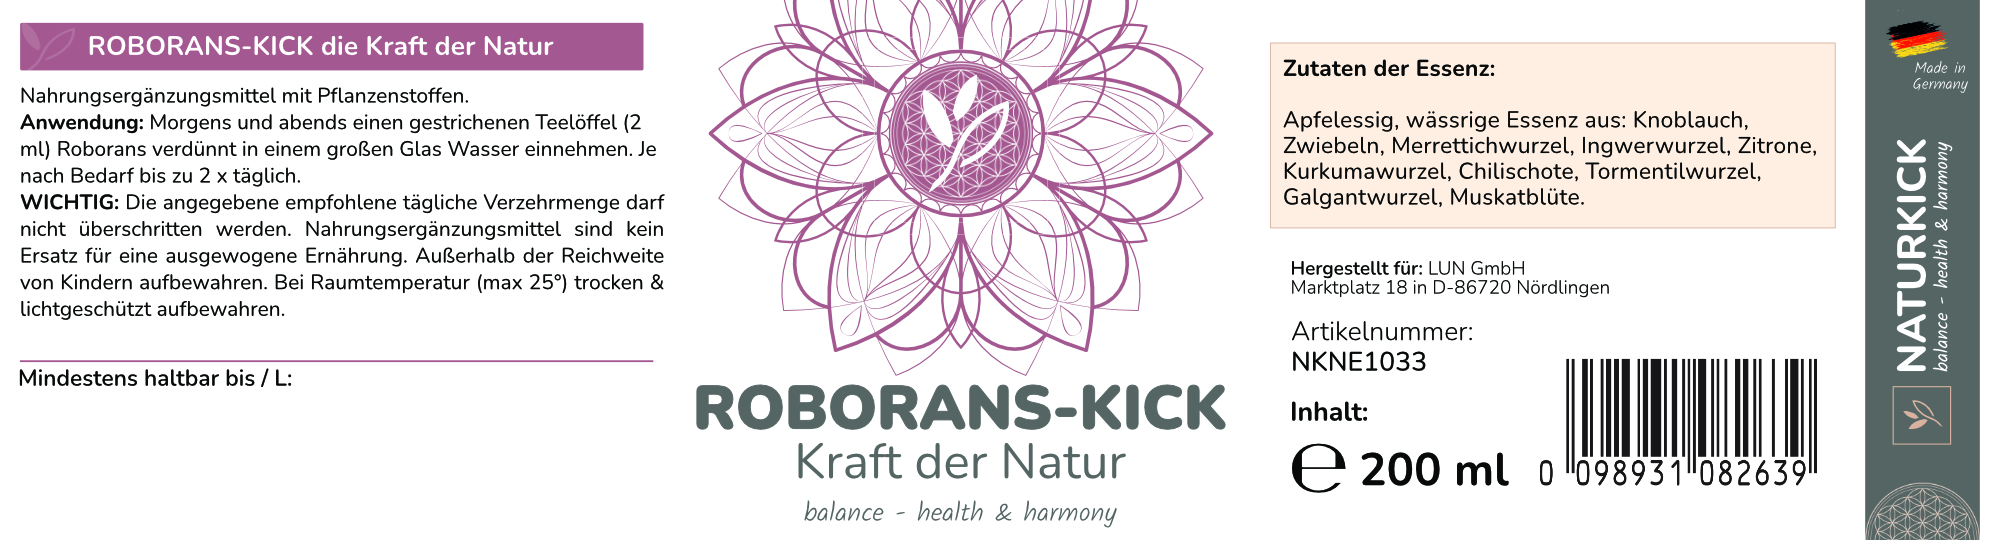 NATURKICK Roborans-Kick Kraft der Natur 200 ml